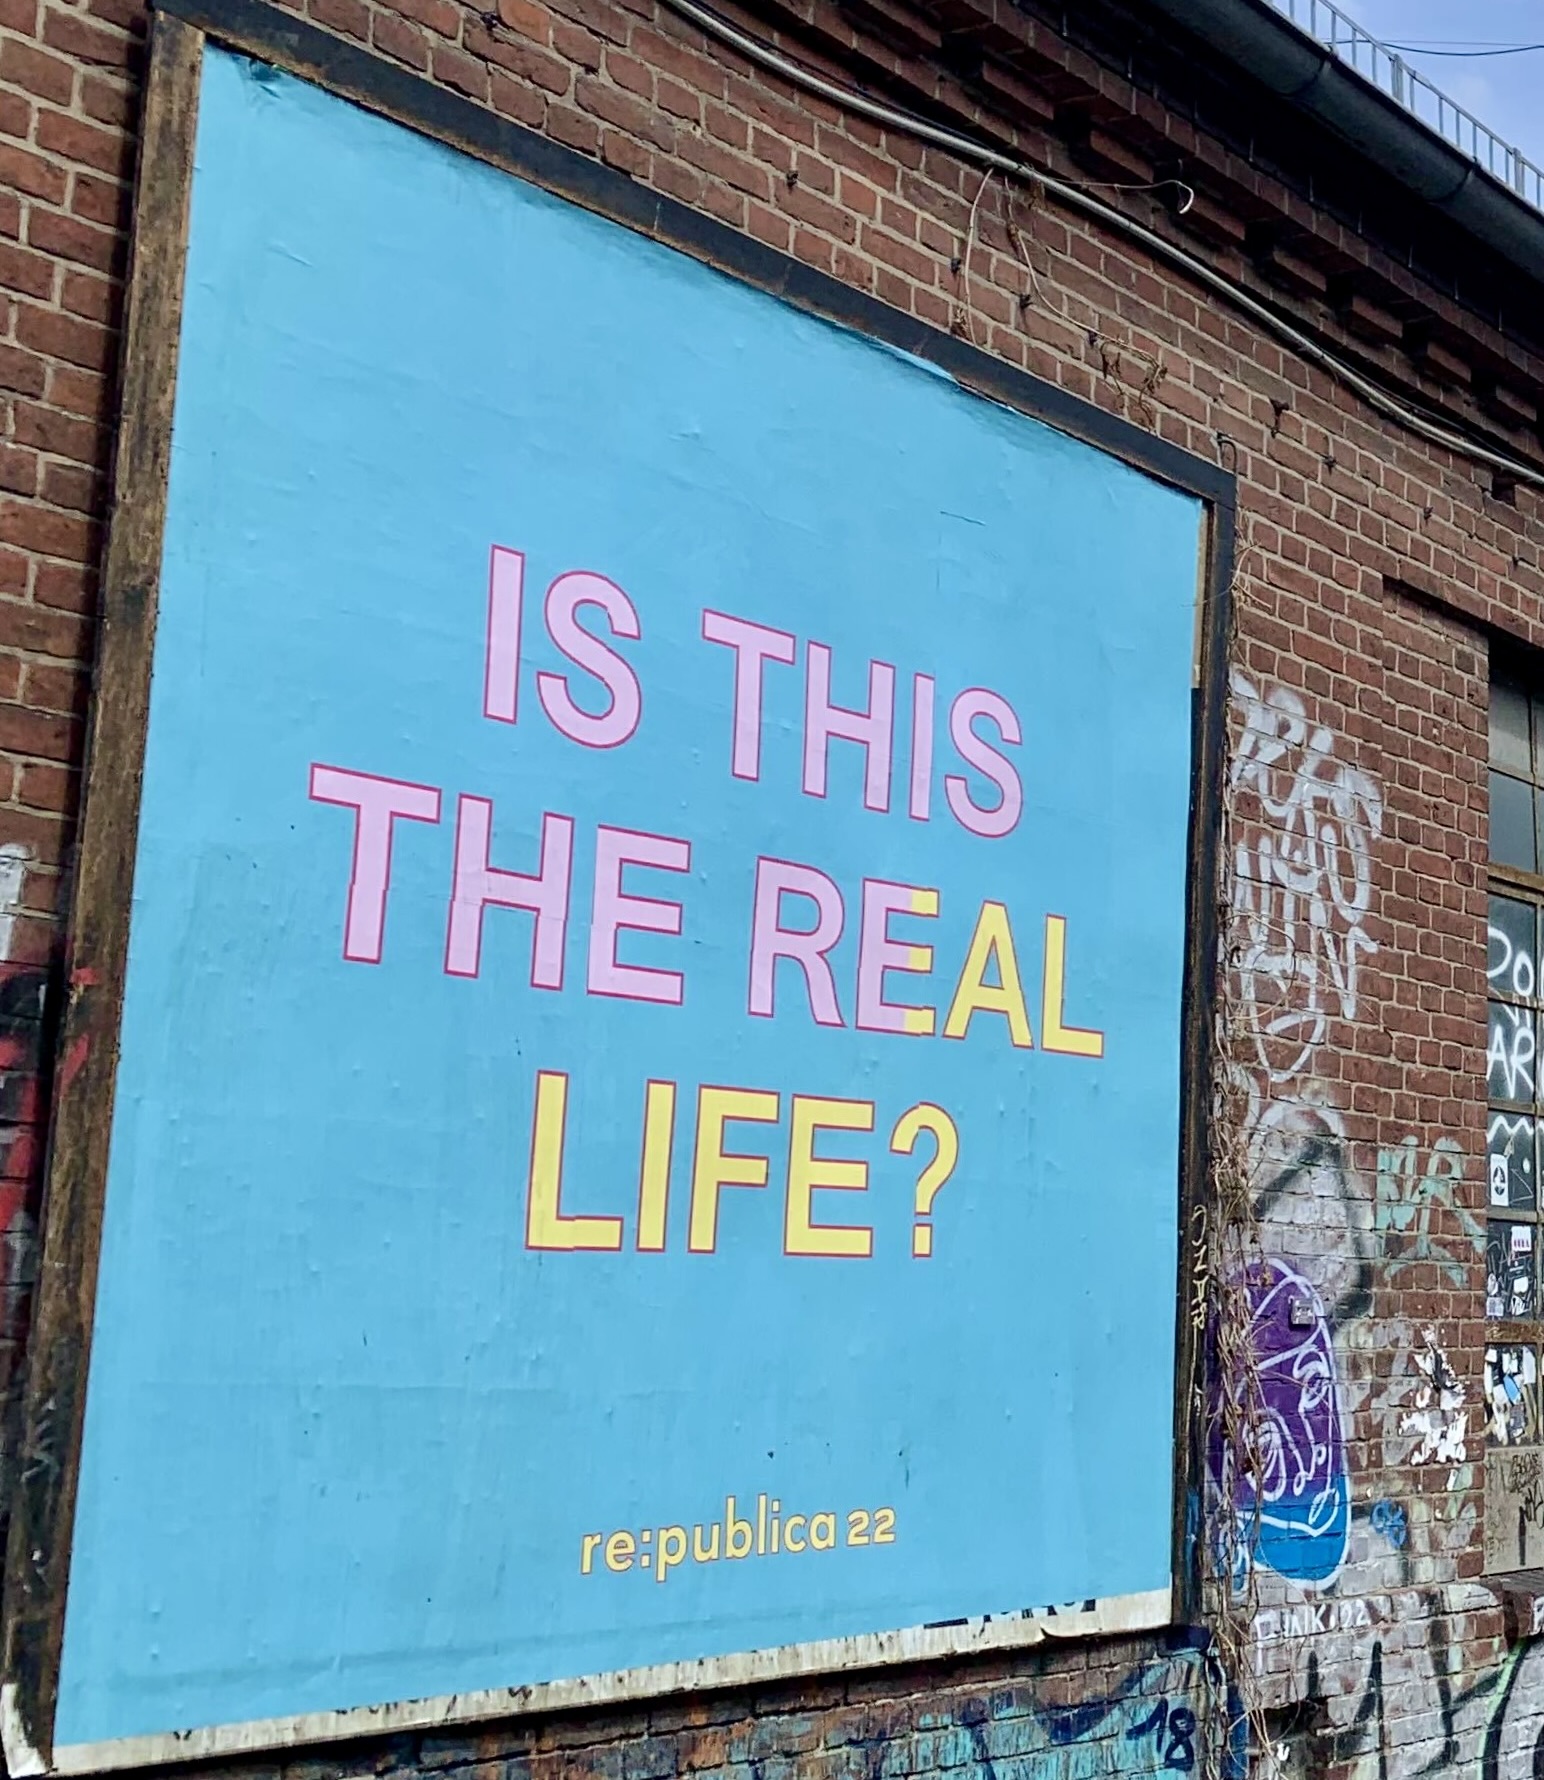 re:publica 2022 Werbeplakat mit dem Schriftzug "is this the real life"